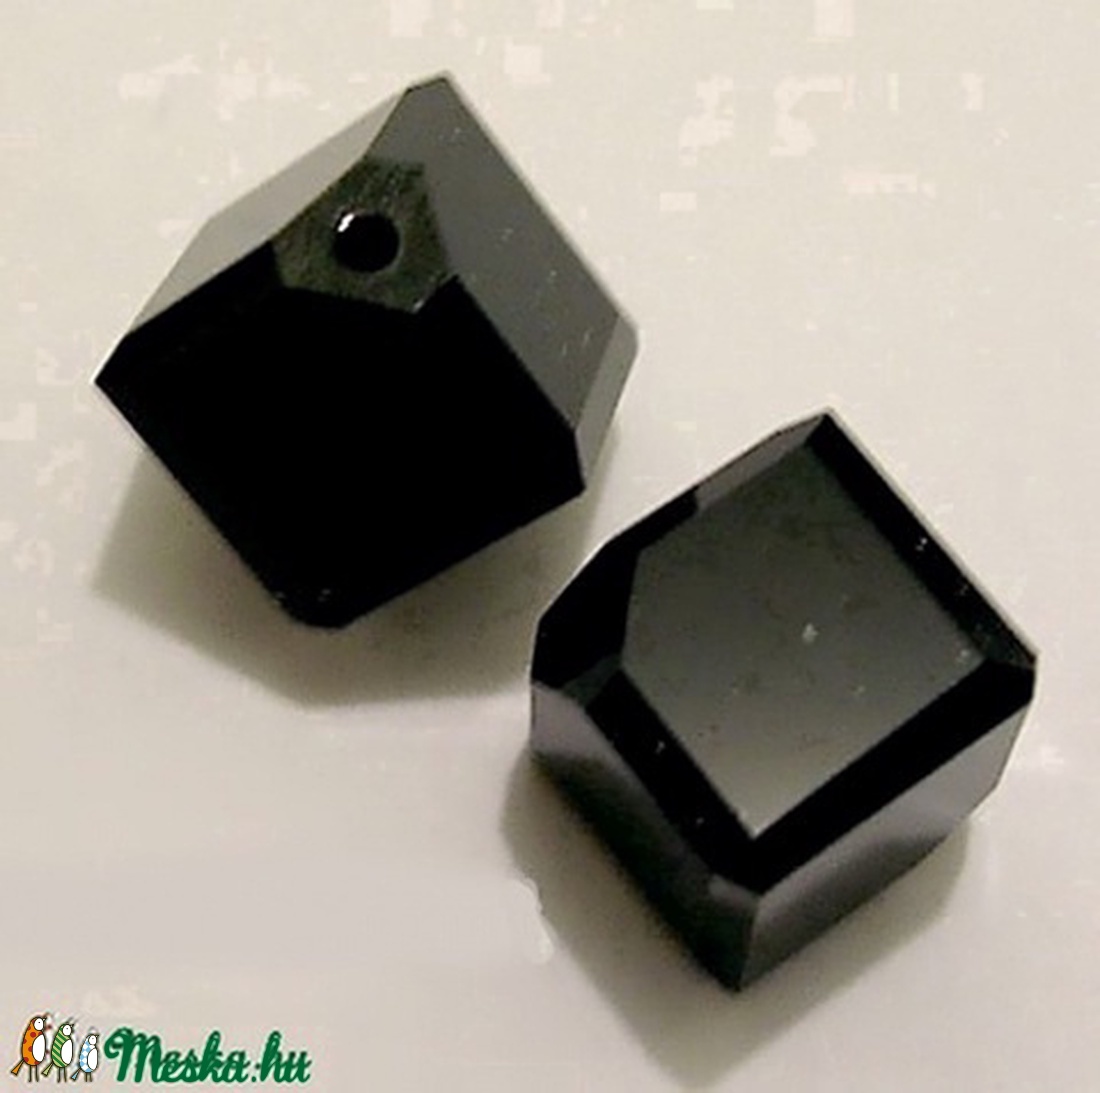 Swarovski kocka átlósan fúrt 6mm-es - gyöngy, ékszerkellék - swarovski kristályok - Meska.hu